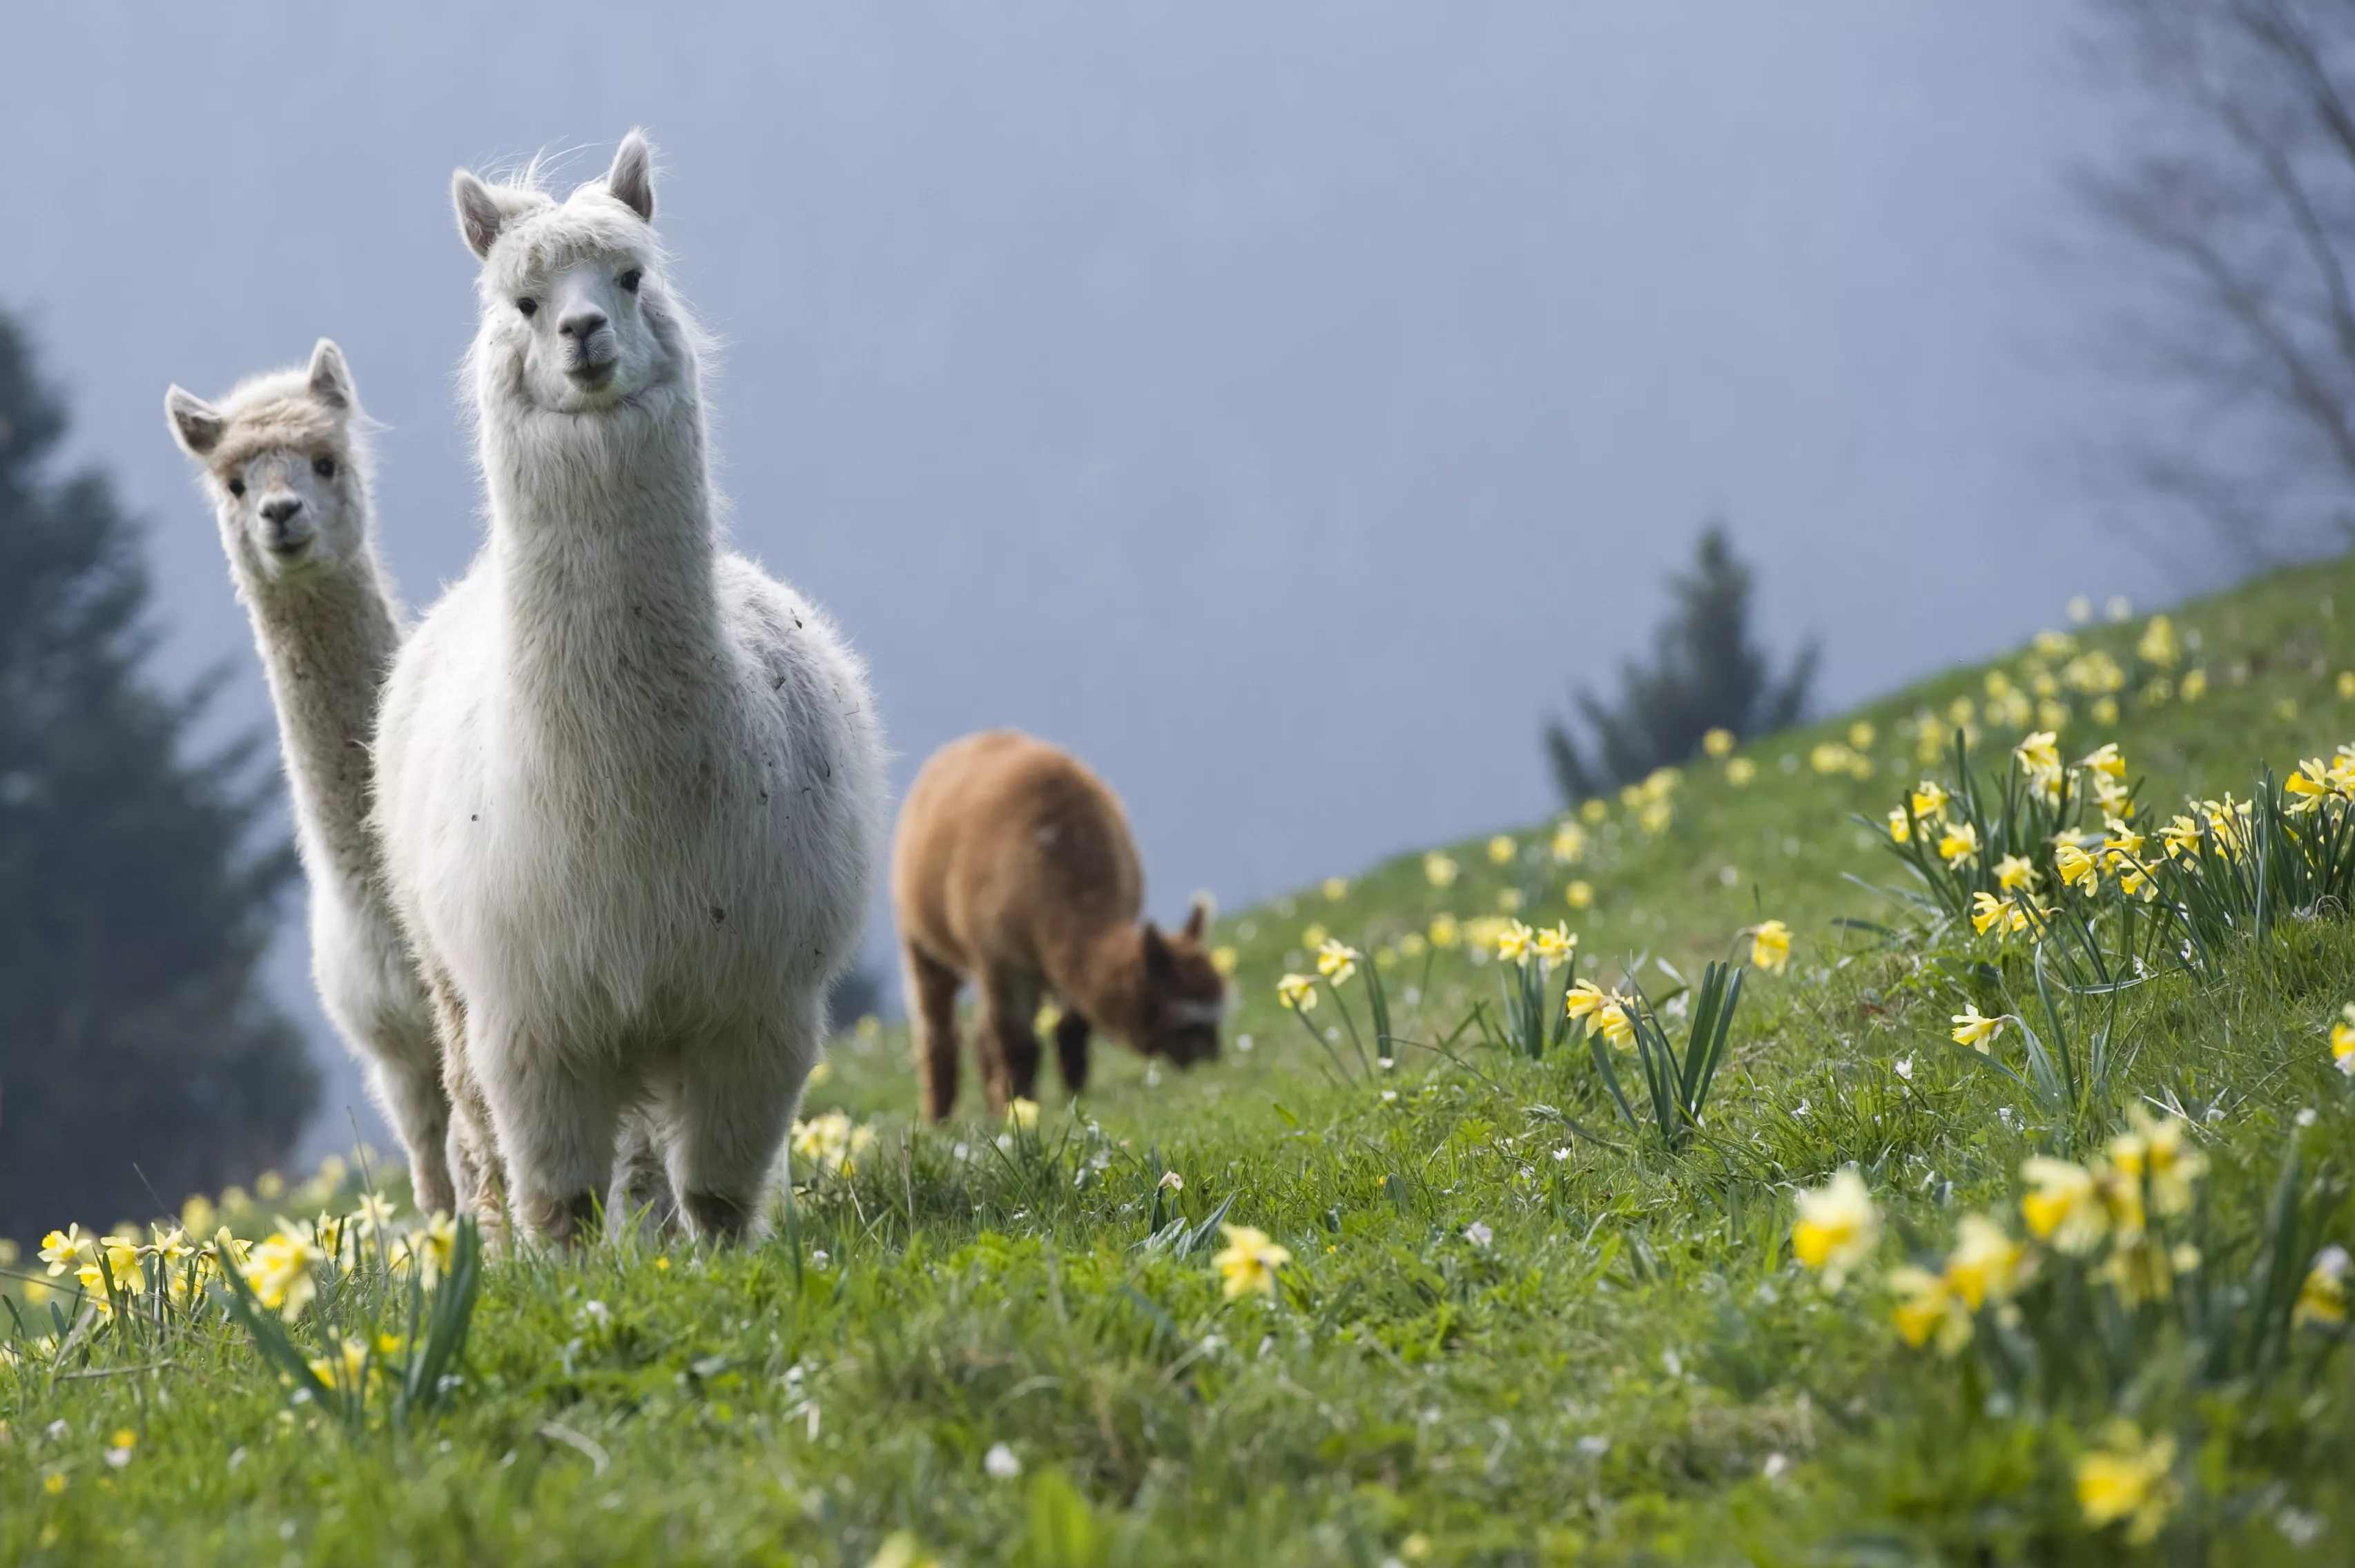 La Montagnes des Lamas in France, Europe | Zoos & Sanctuaries - Rated 3.7